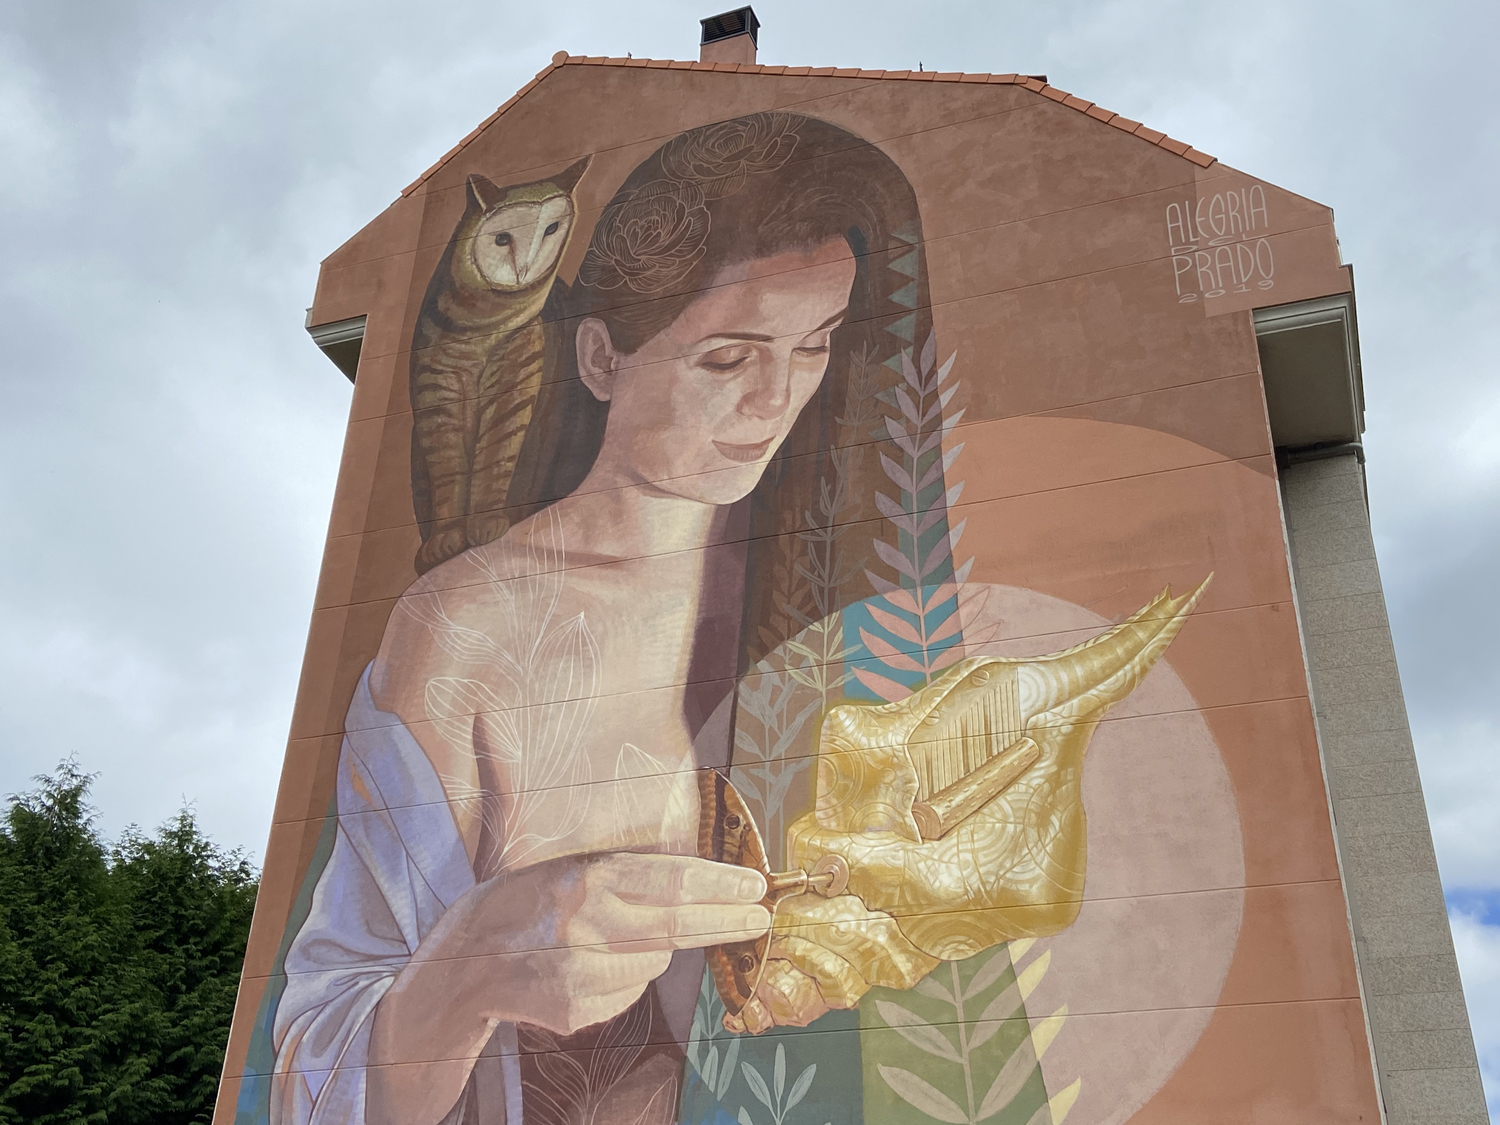 arte urbano Alegria del Prado Galicia